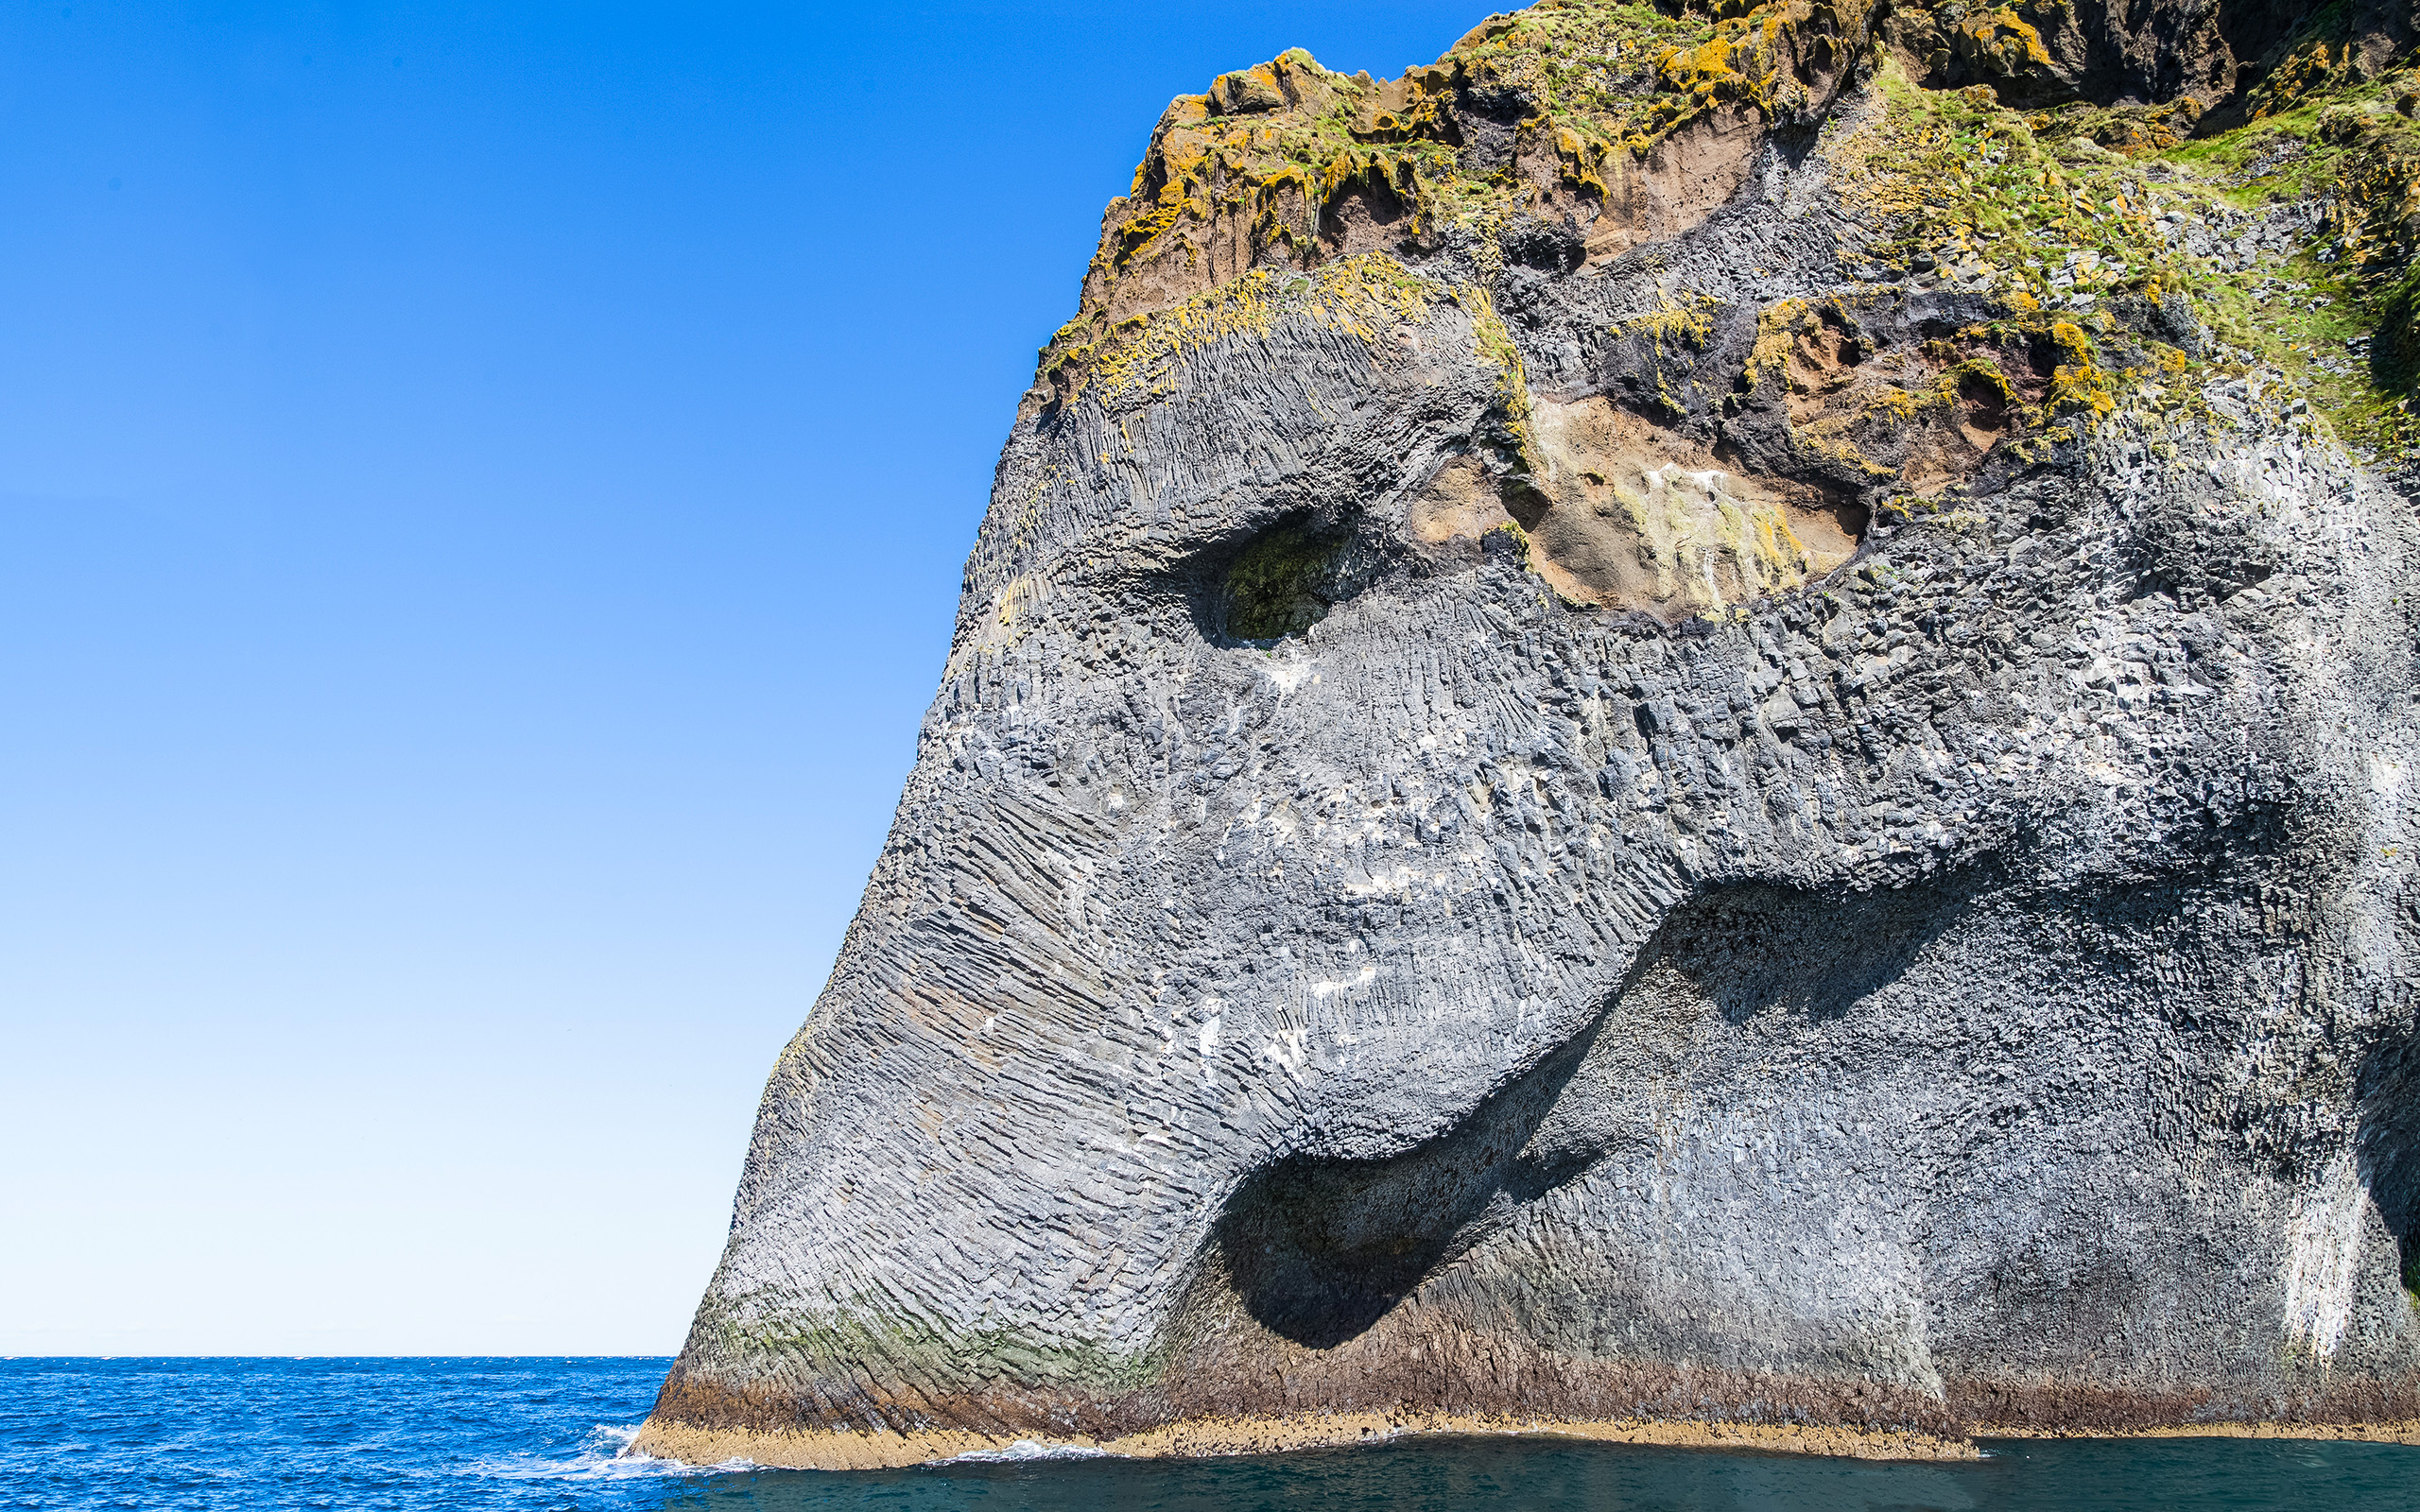 The Elephant rock on Heimaey island